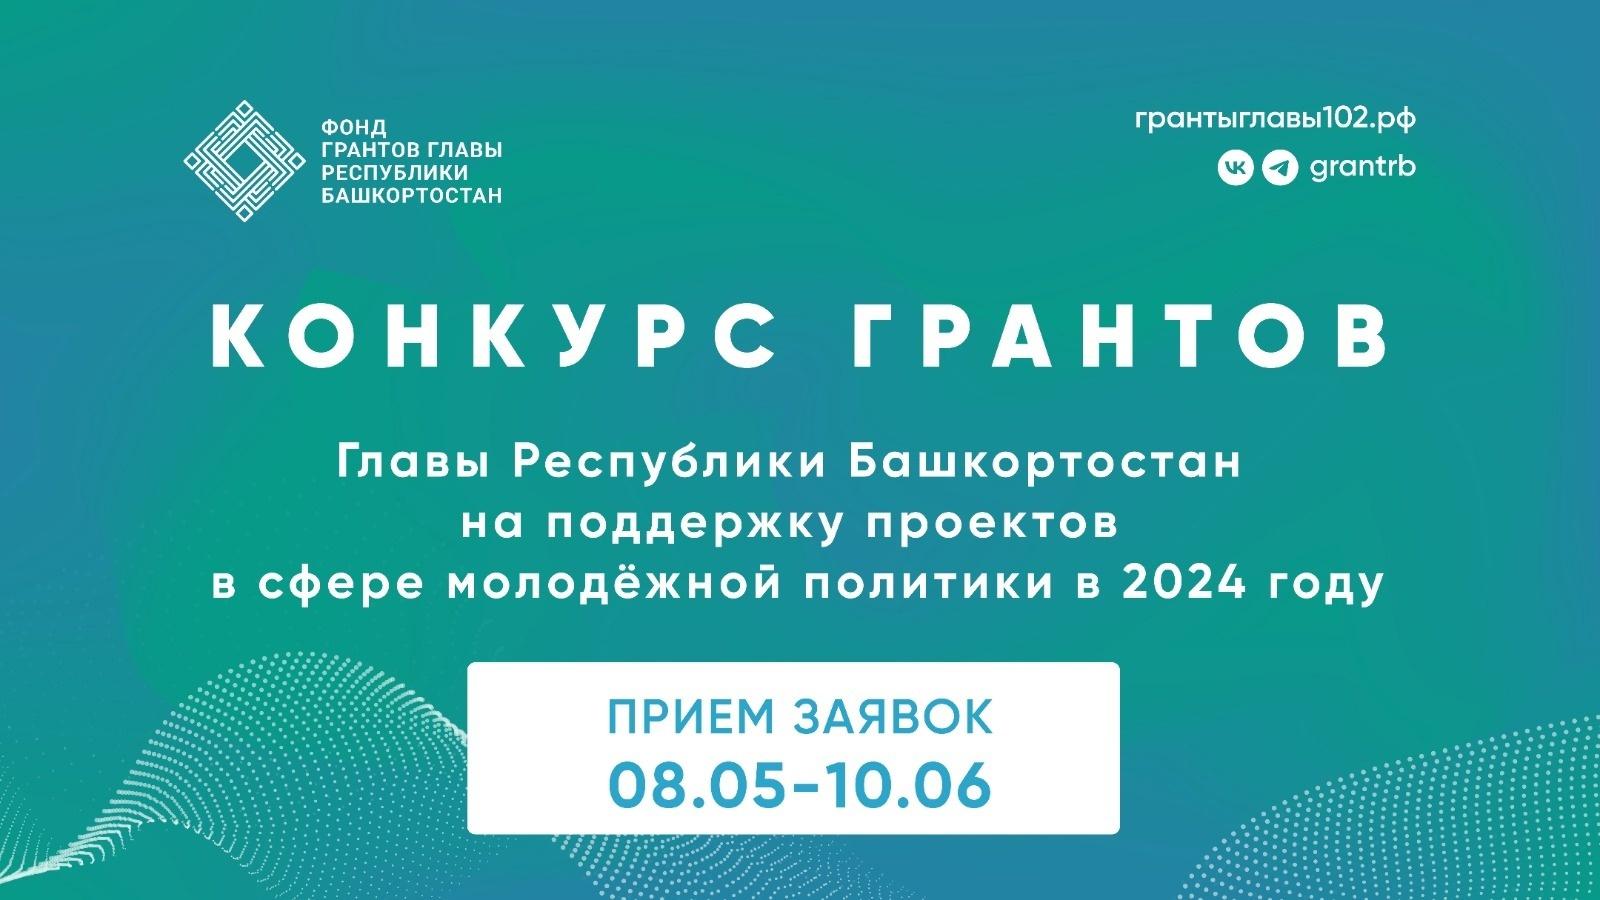 Cтартовал конкурс грантов Главы Республики Башкортостан на поддержку проектов в сфере молодежной политики в 2024 году